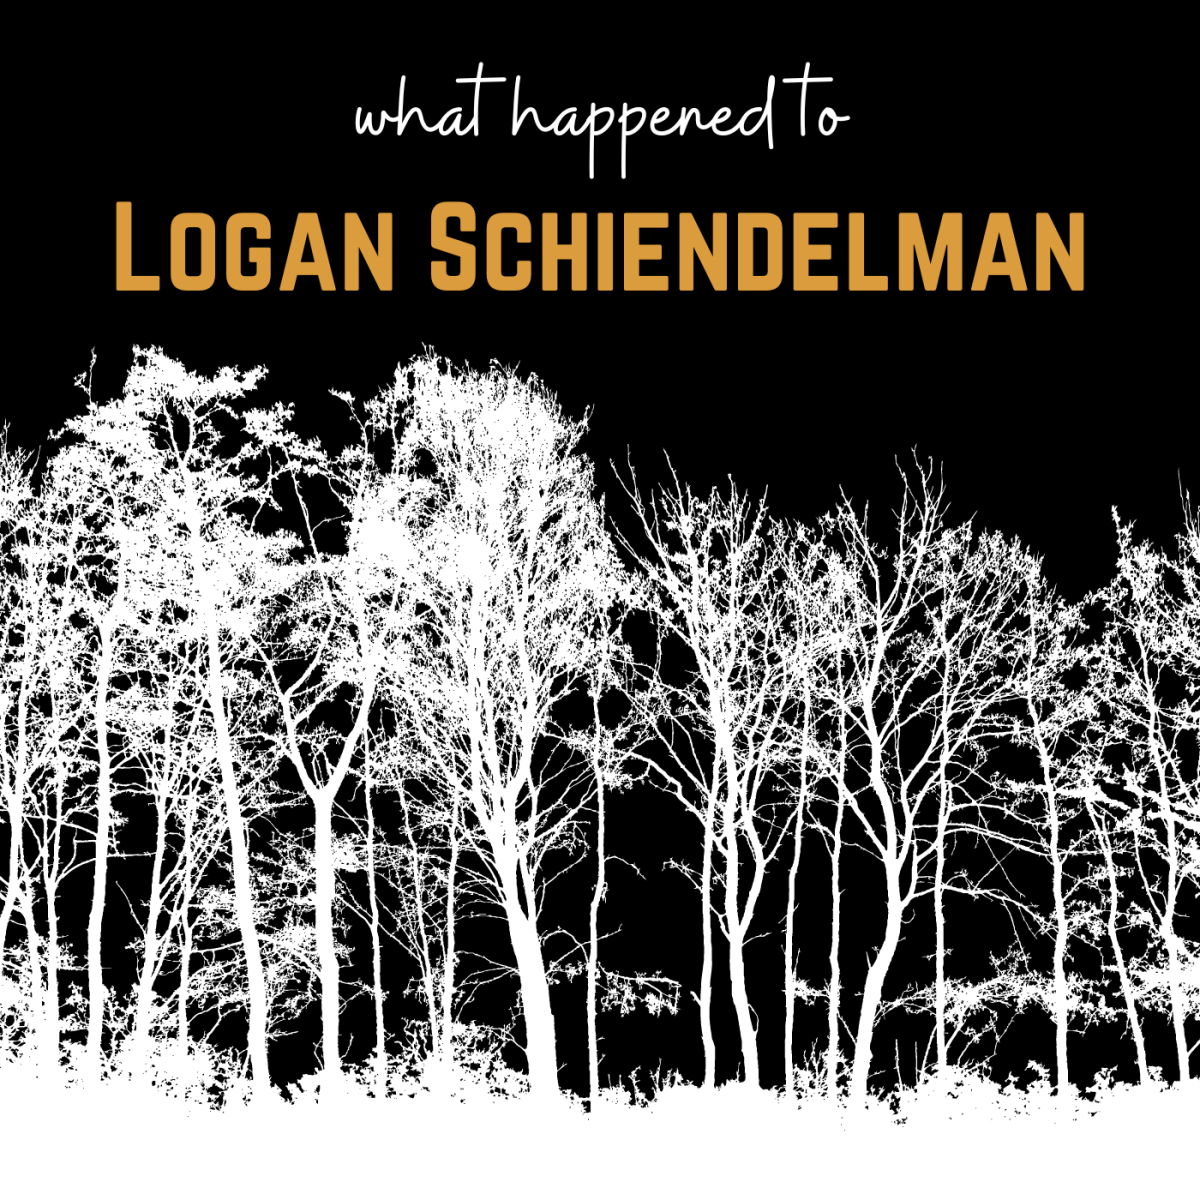 Missing: Logan Schiendelman